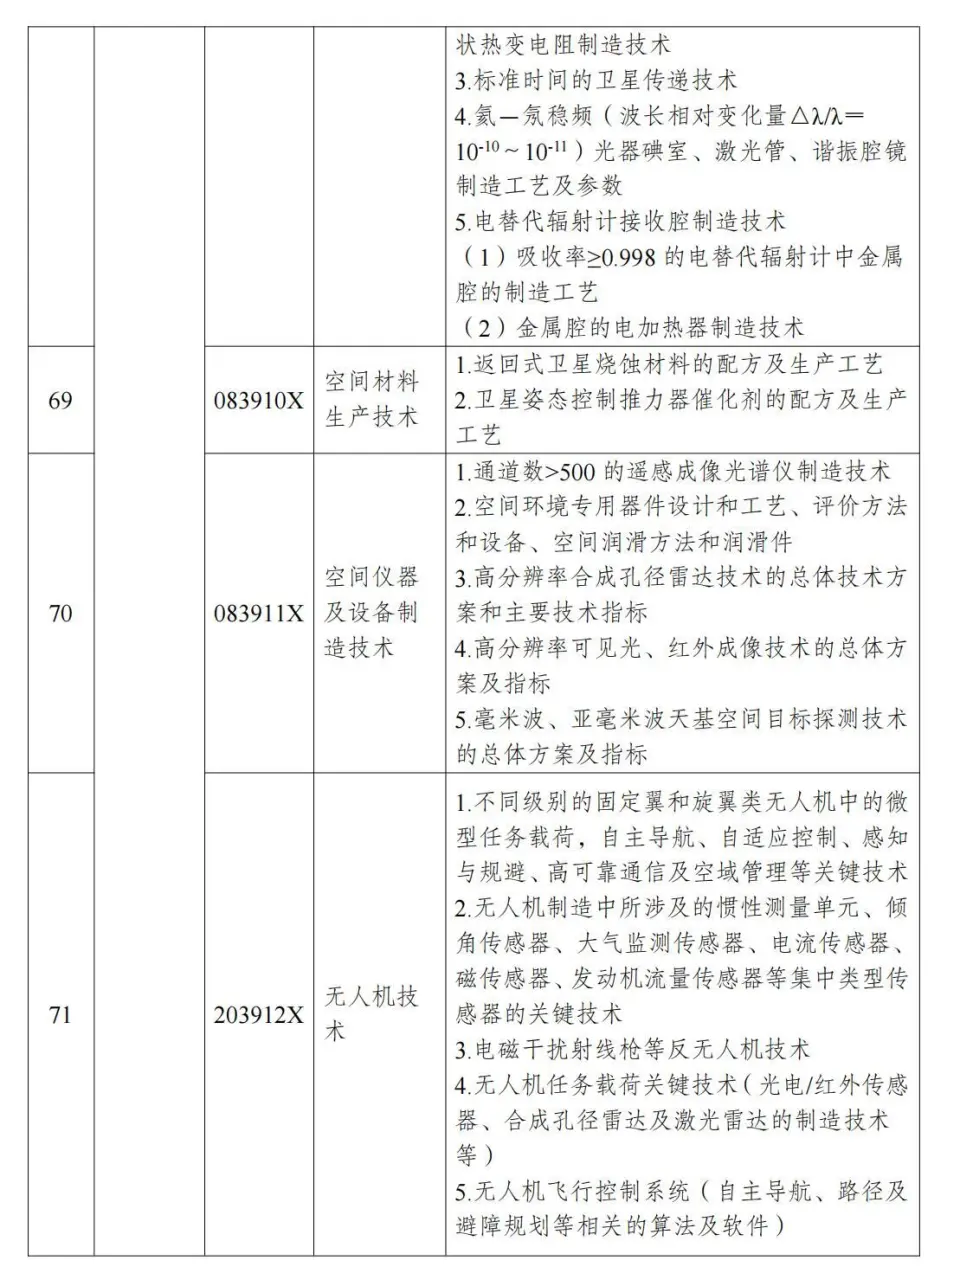 两部分公布《中国制止出口限制出口技术目录》 第19张图片